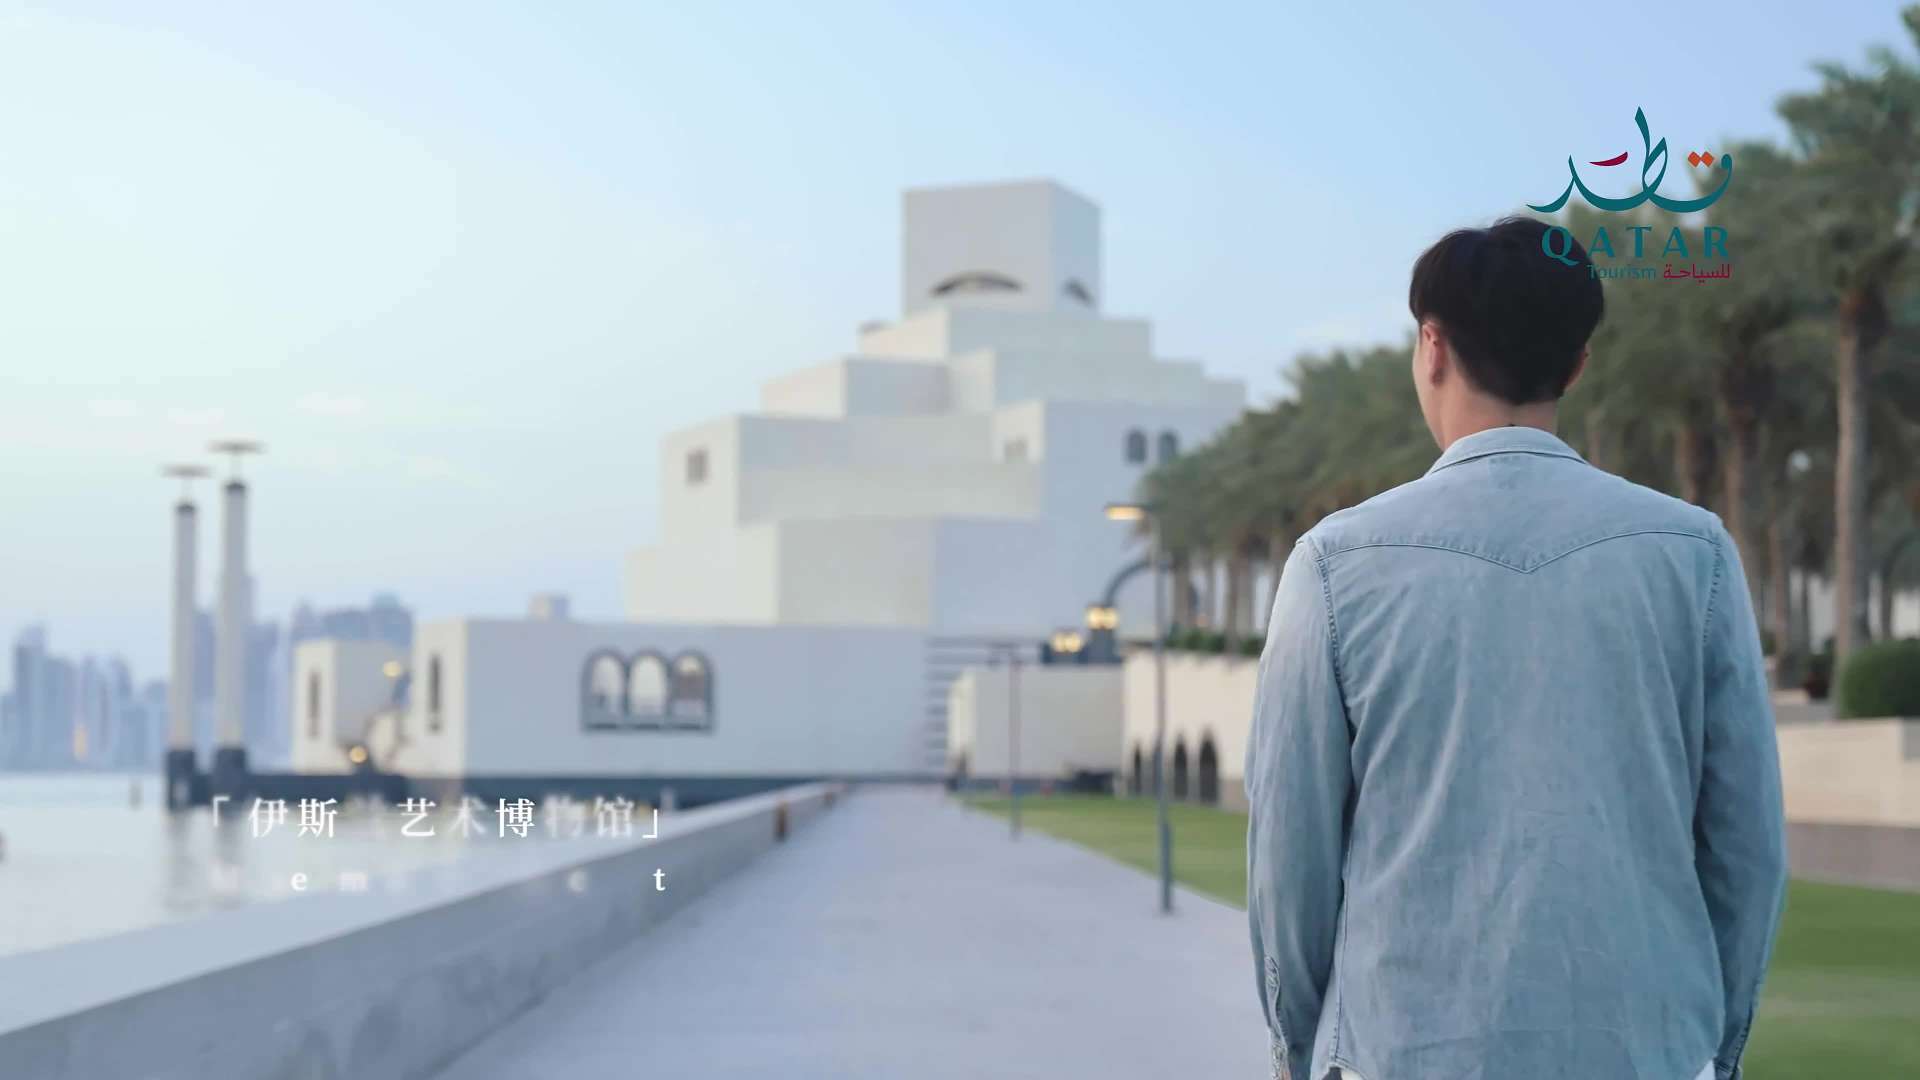 《感受更多奇观》卡塔尔国家旅游局旅行 广告片2